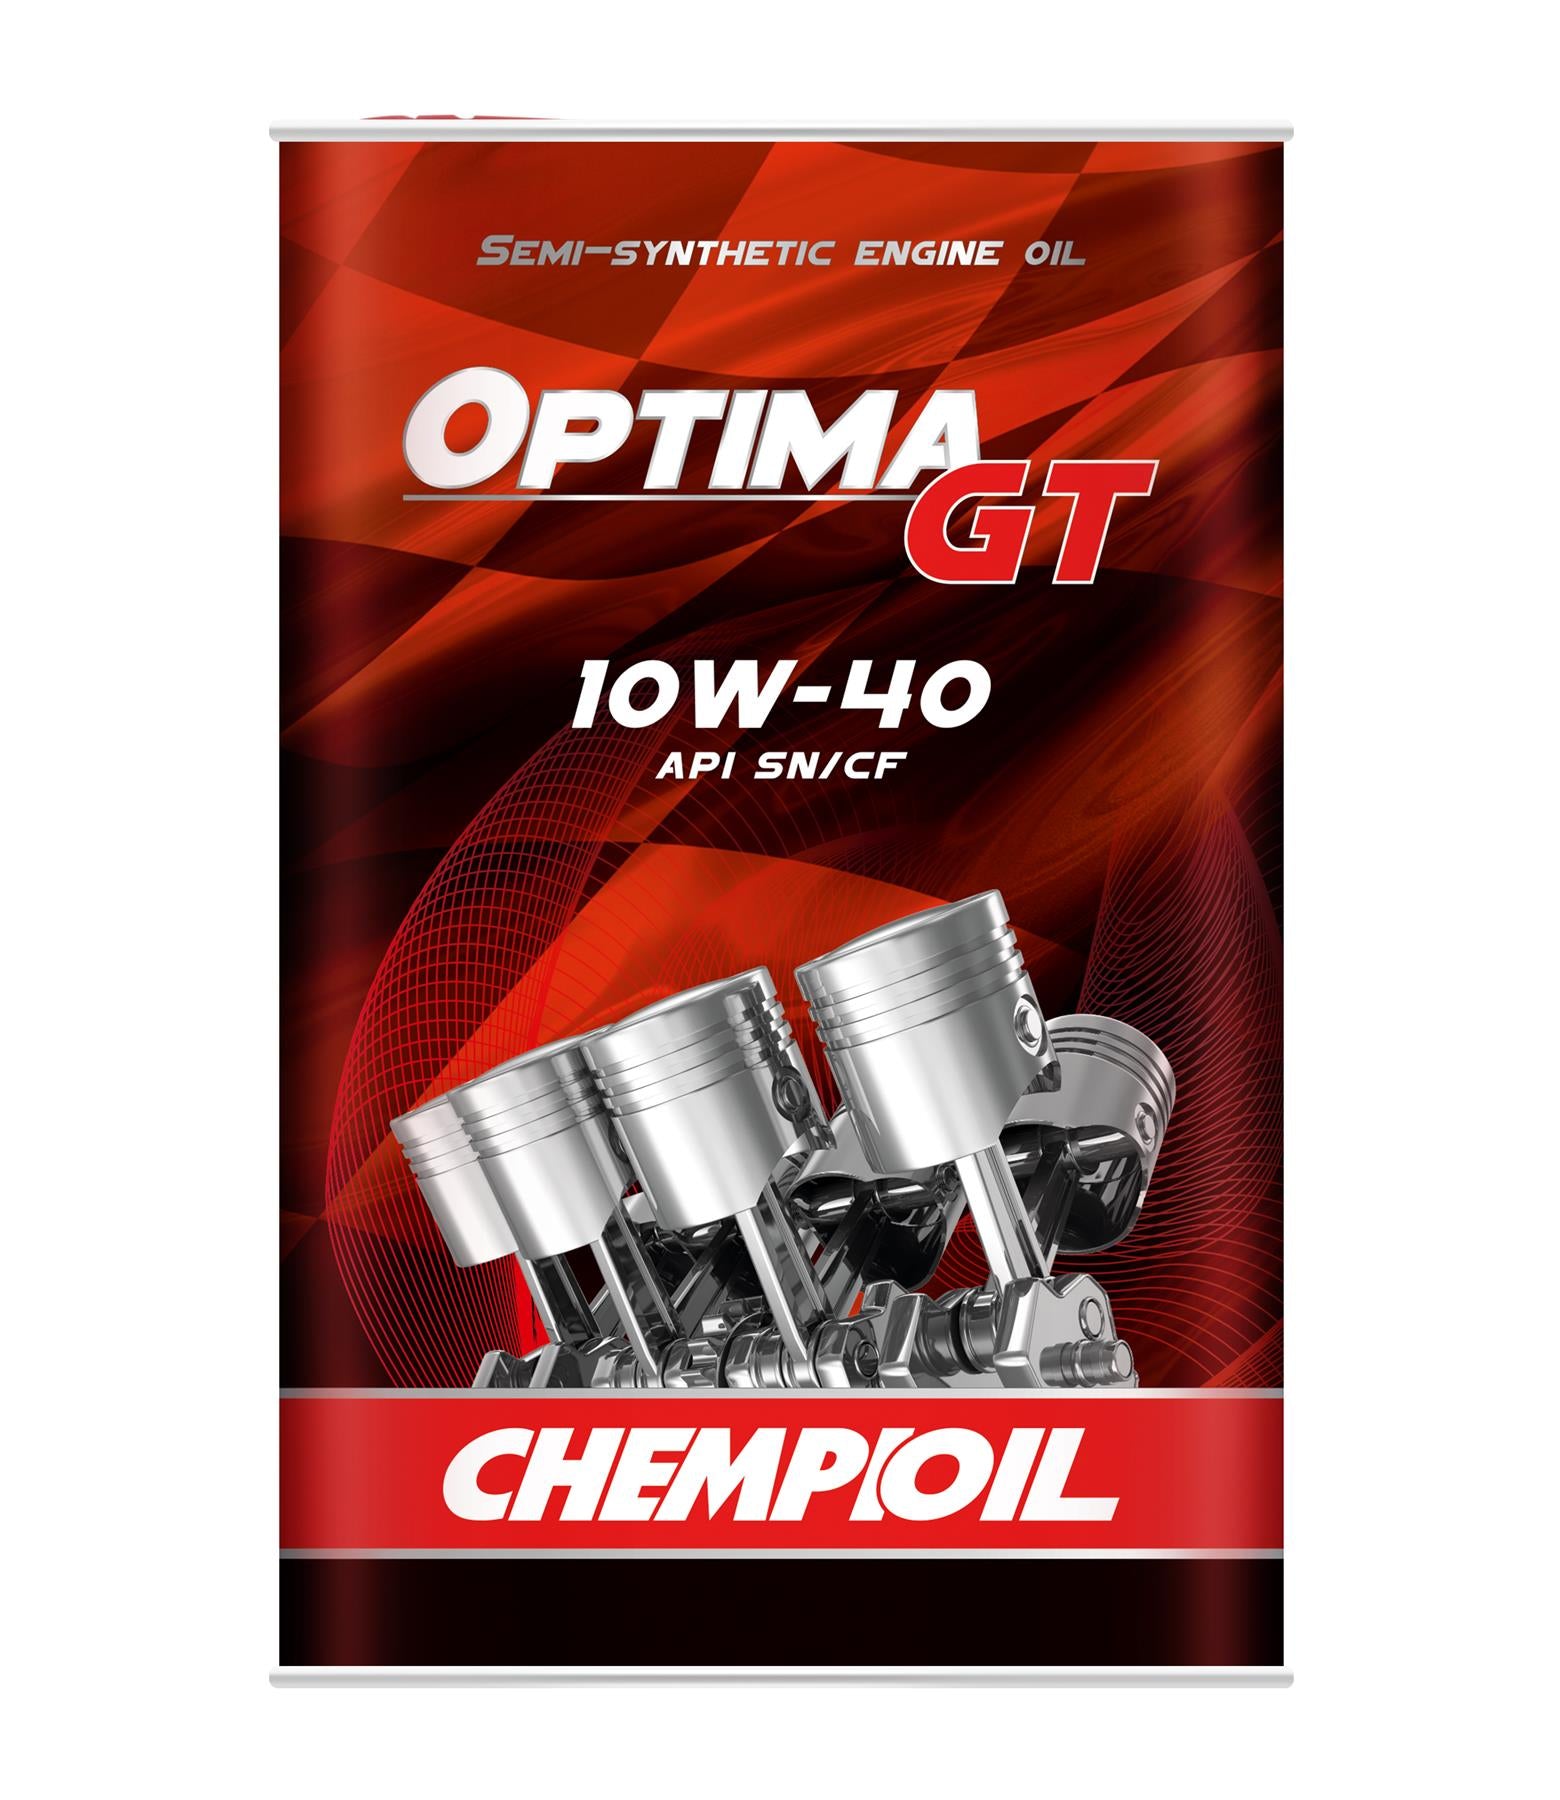 Chempioil - 9501 Optima GT 10W-40 4L Engine Oil